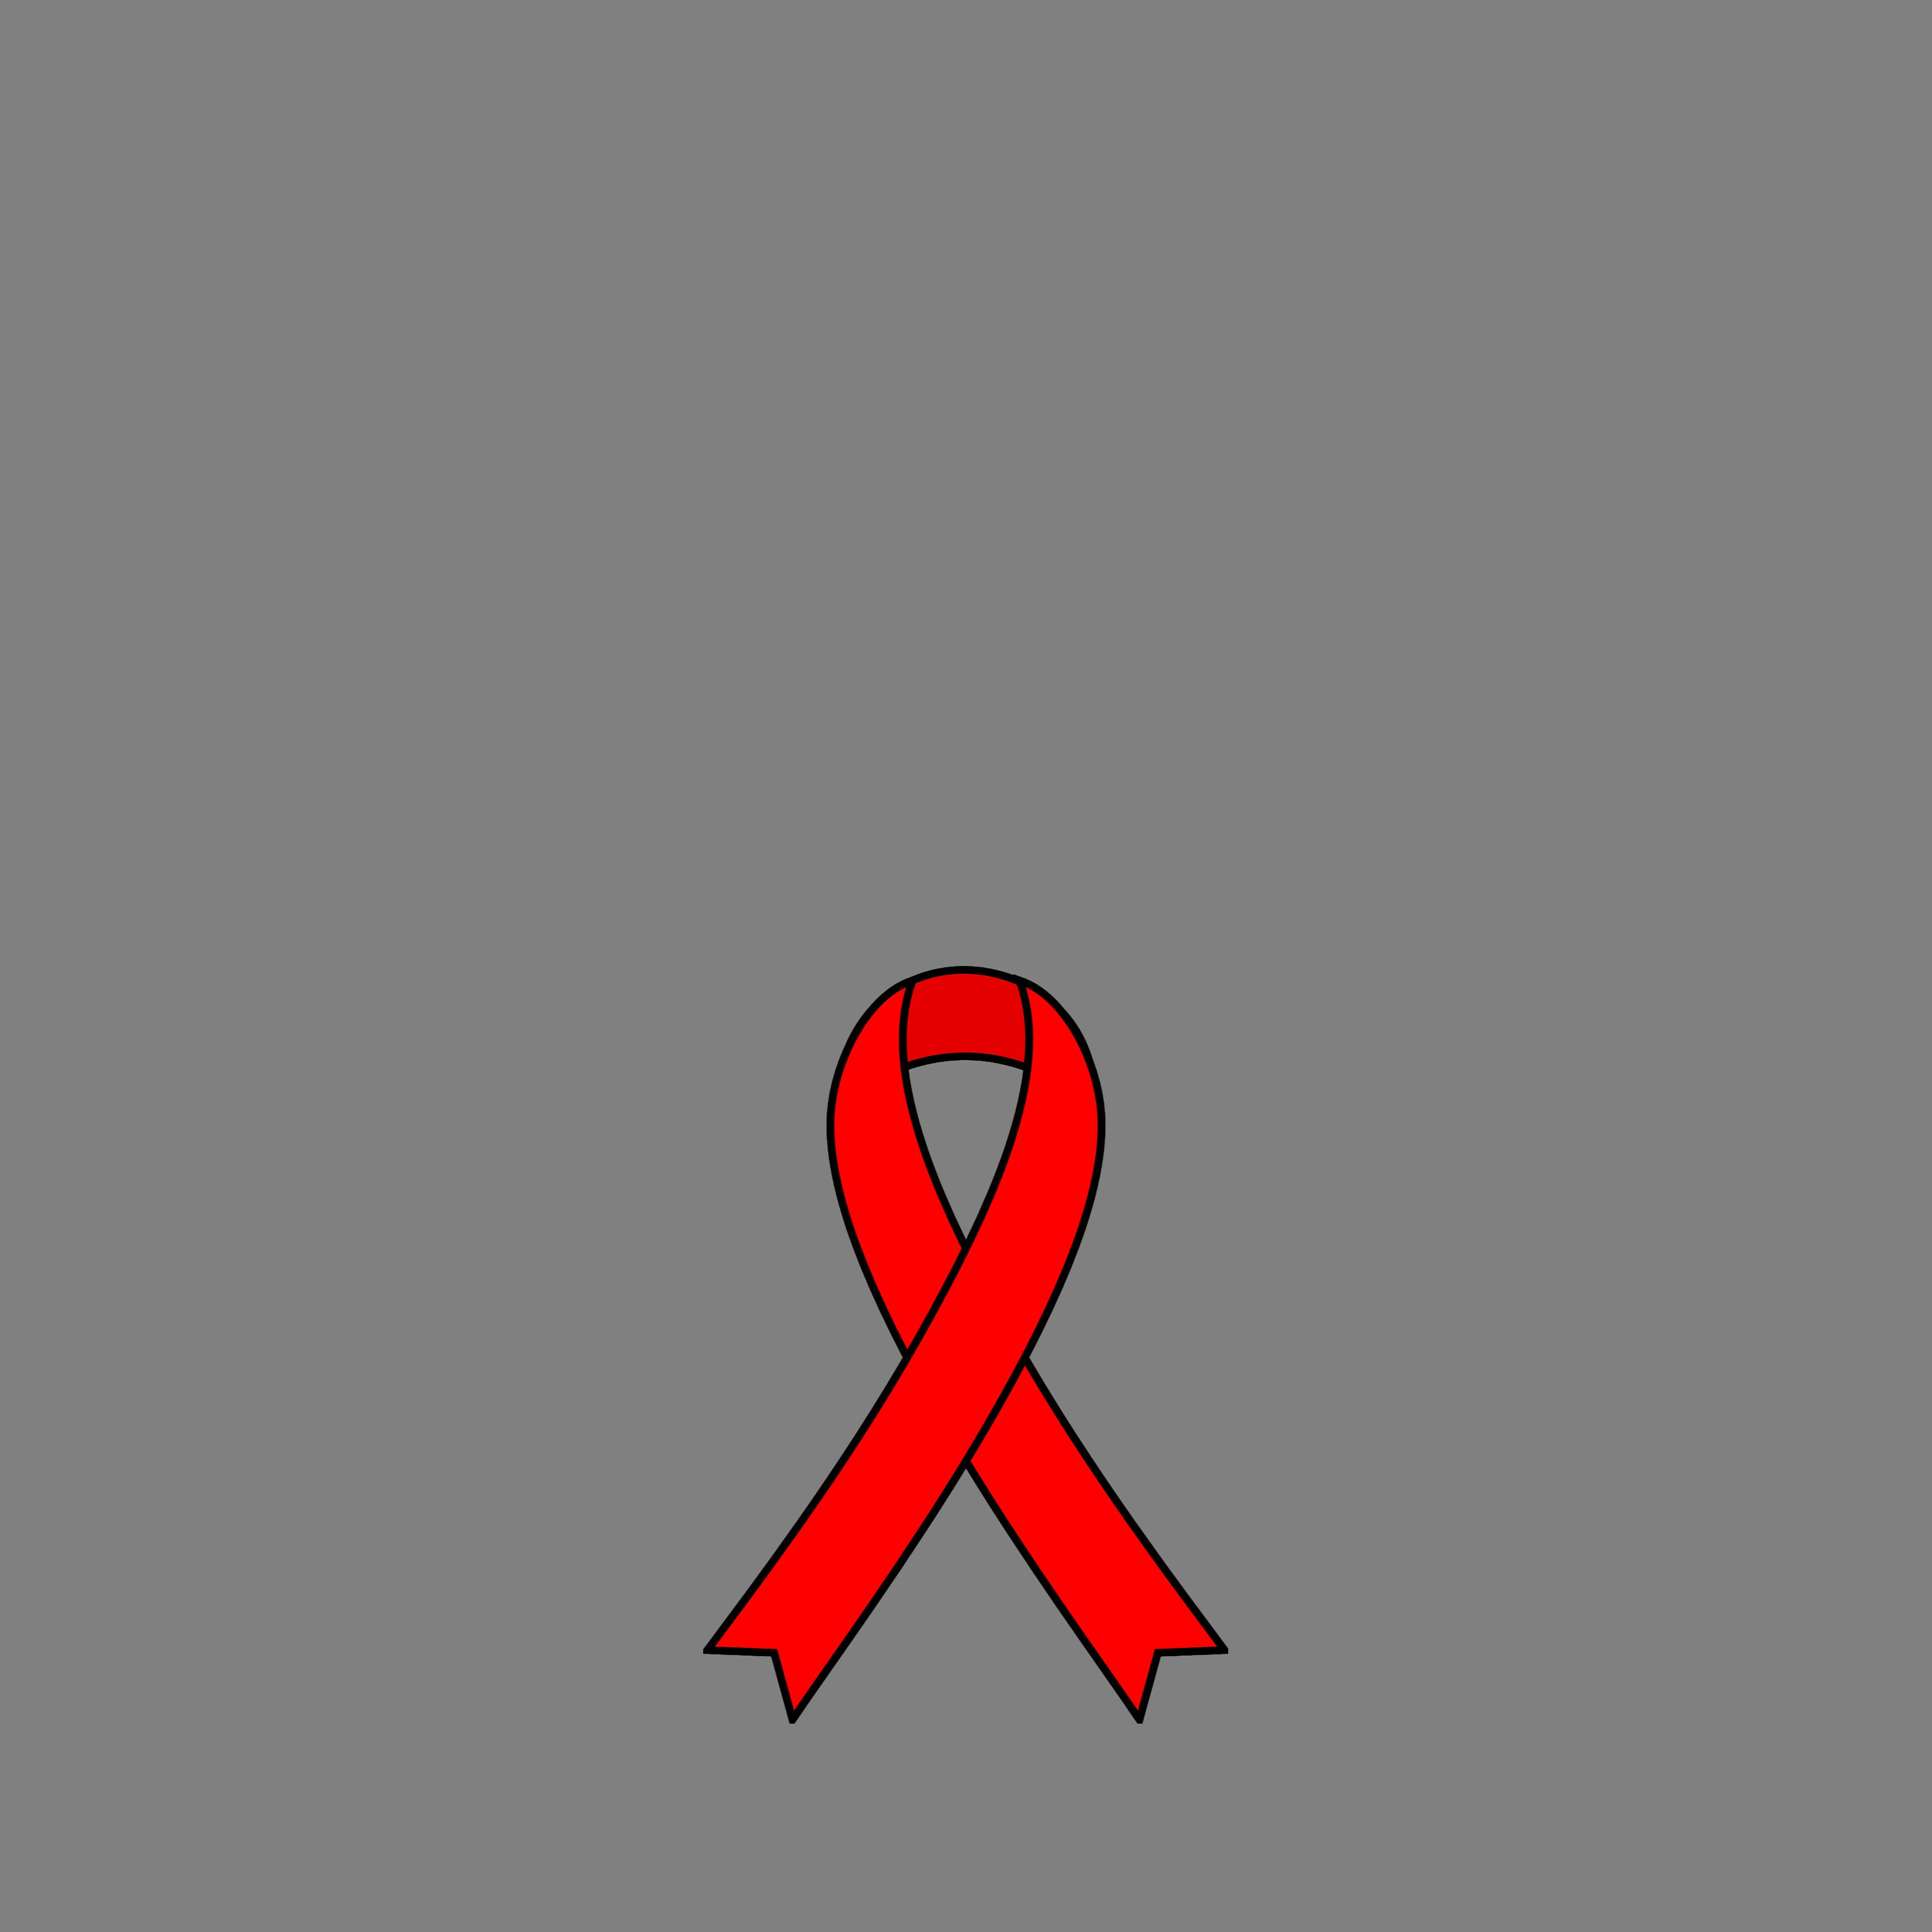 Un 13% dels afectats pel VIH no saben que són positius